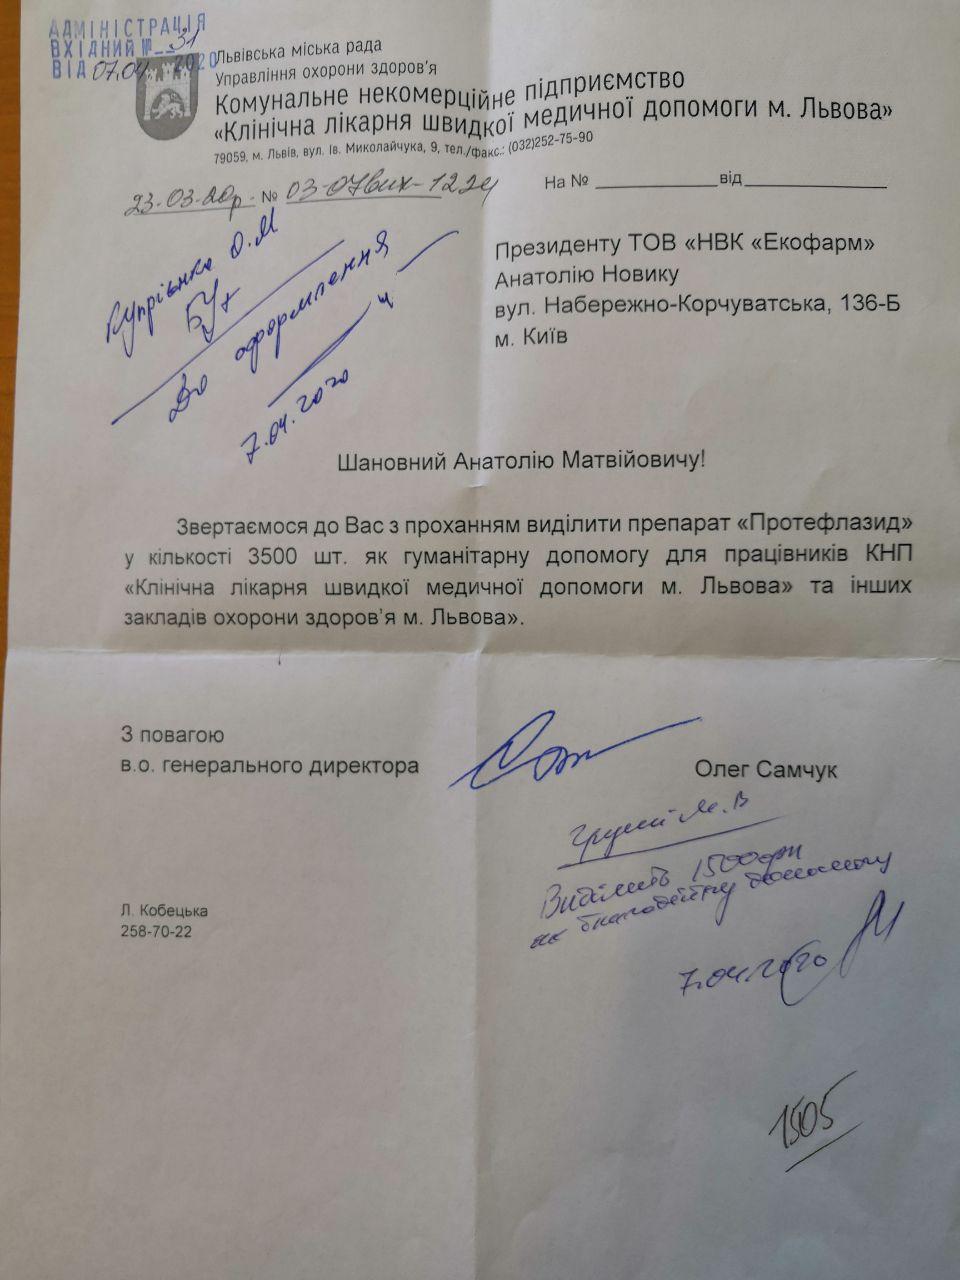 Львовские больницы получили партию Протефлазида по просьбе городских властей